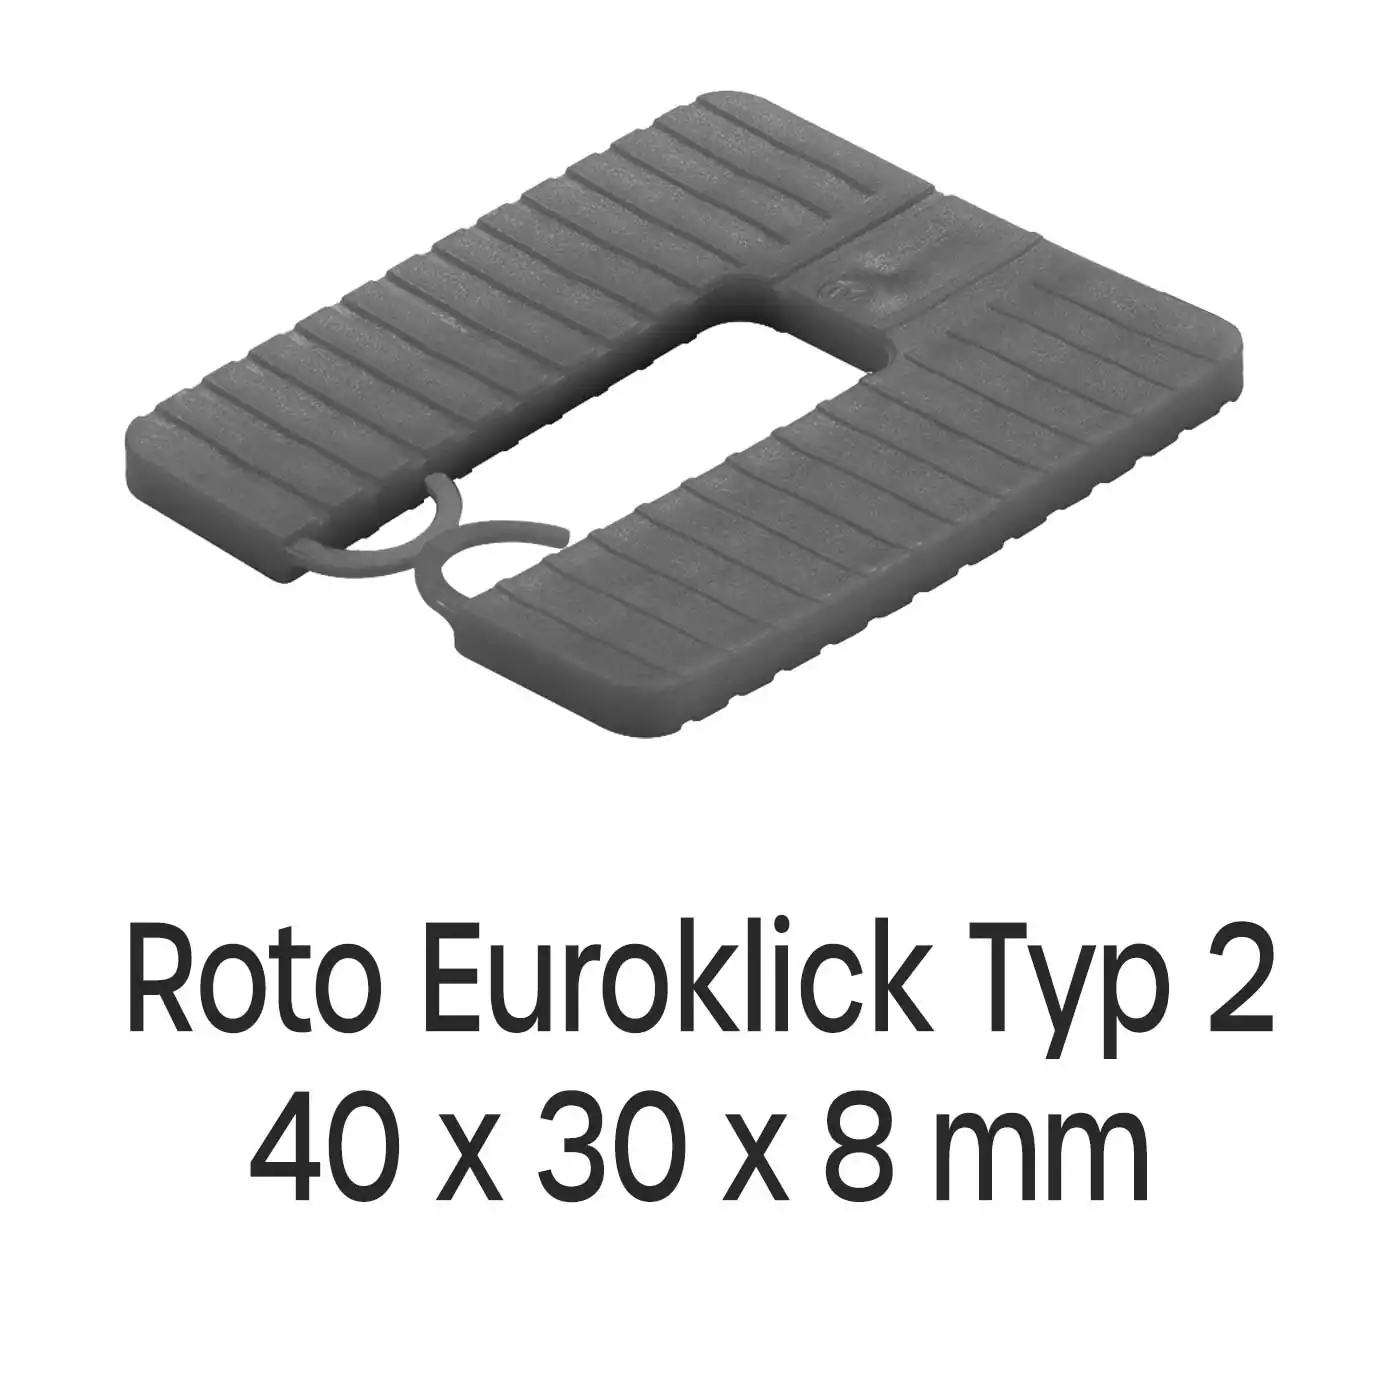 Distanzplatten Roto Euroklick Typ 2 40 x 30 x 8 mm 500 Stück